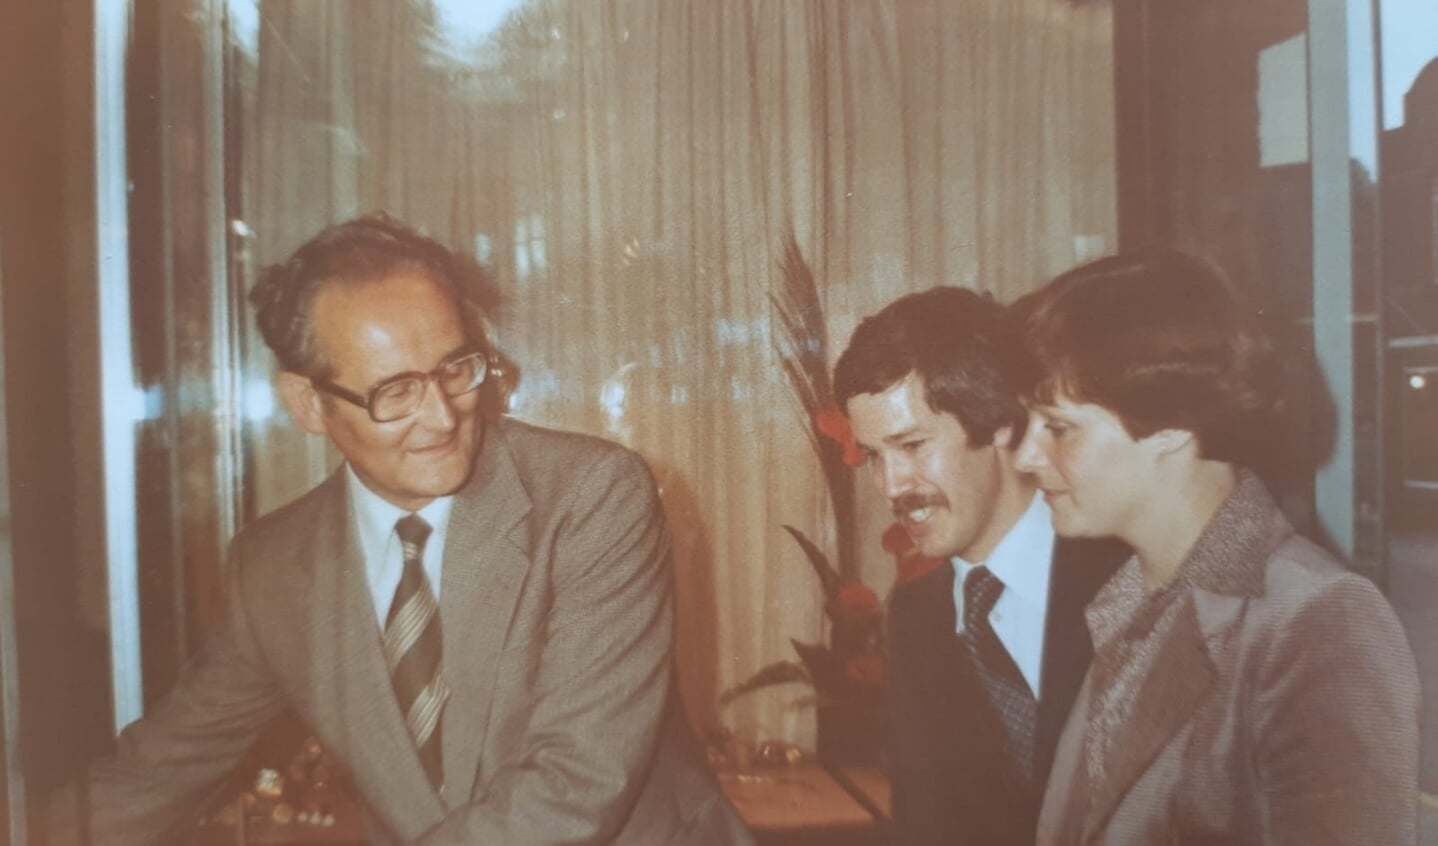 De opening van de winkel in 1977 met burgemeester Hoekstra.